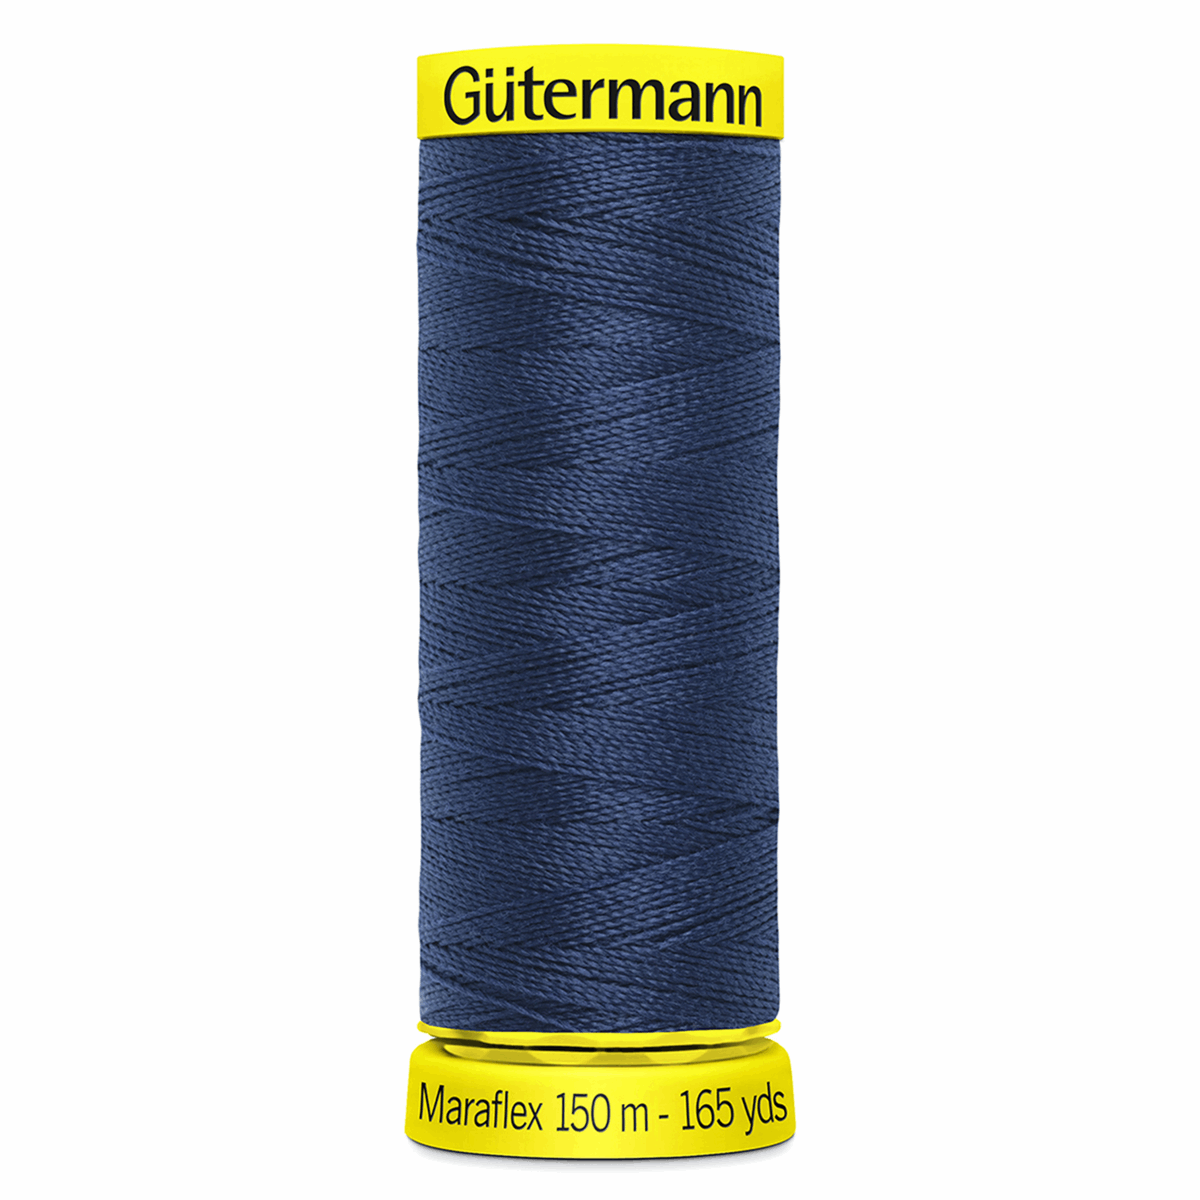 Gutermann Maraflex Elastic Sewing Thread 150m Dark Blue 13